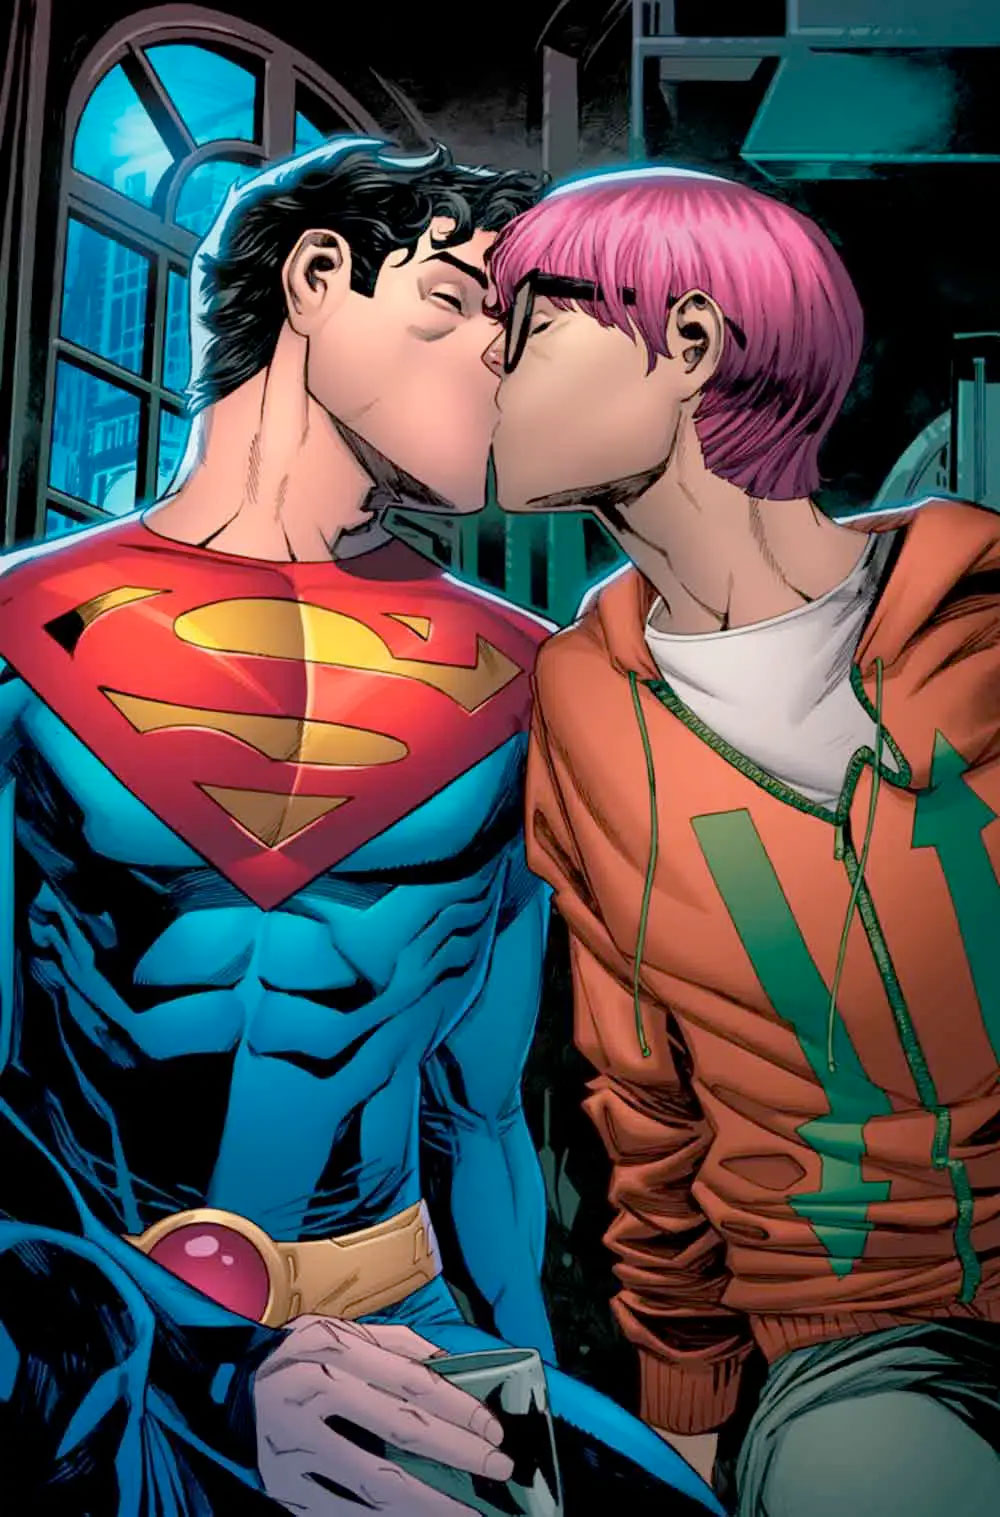 El joven Superman es gay, el héroe de la comunidad LGTBIQ+